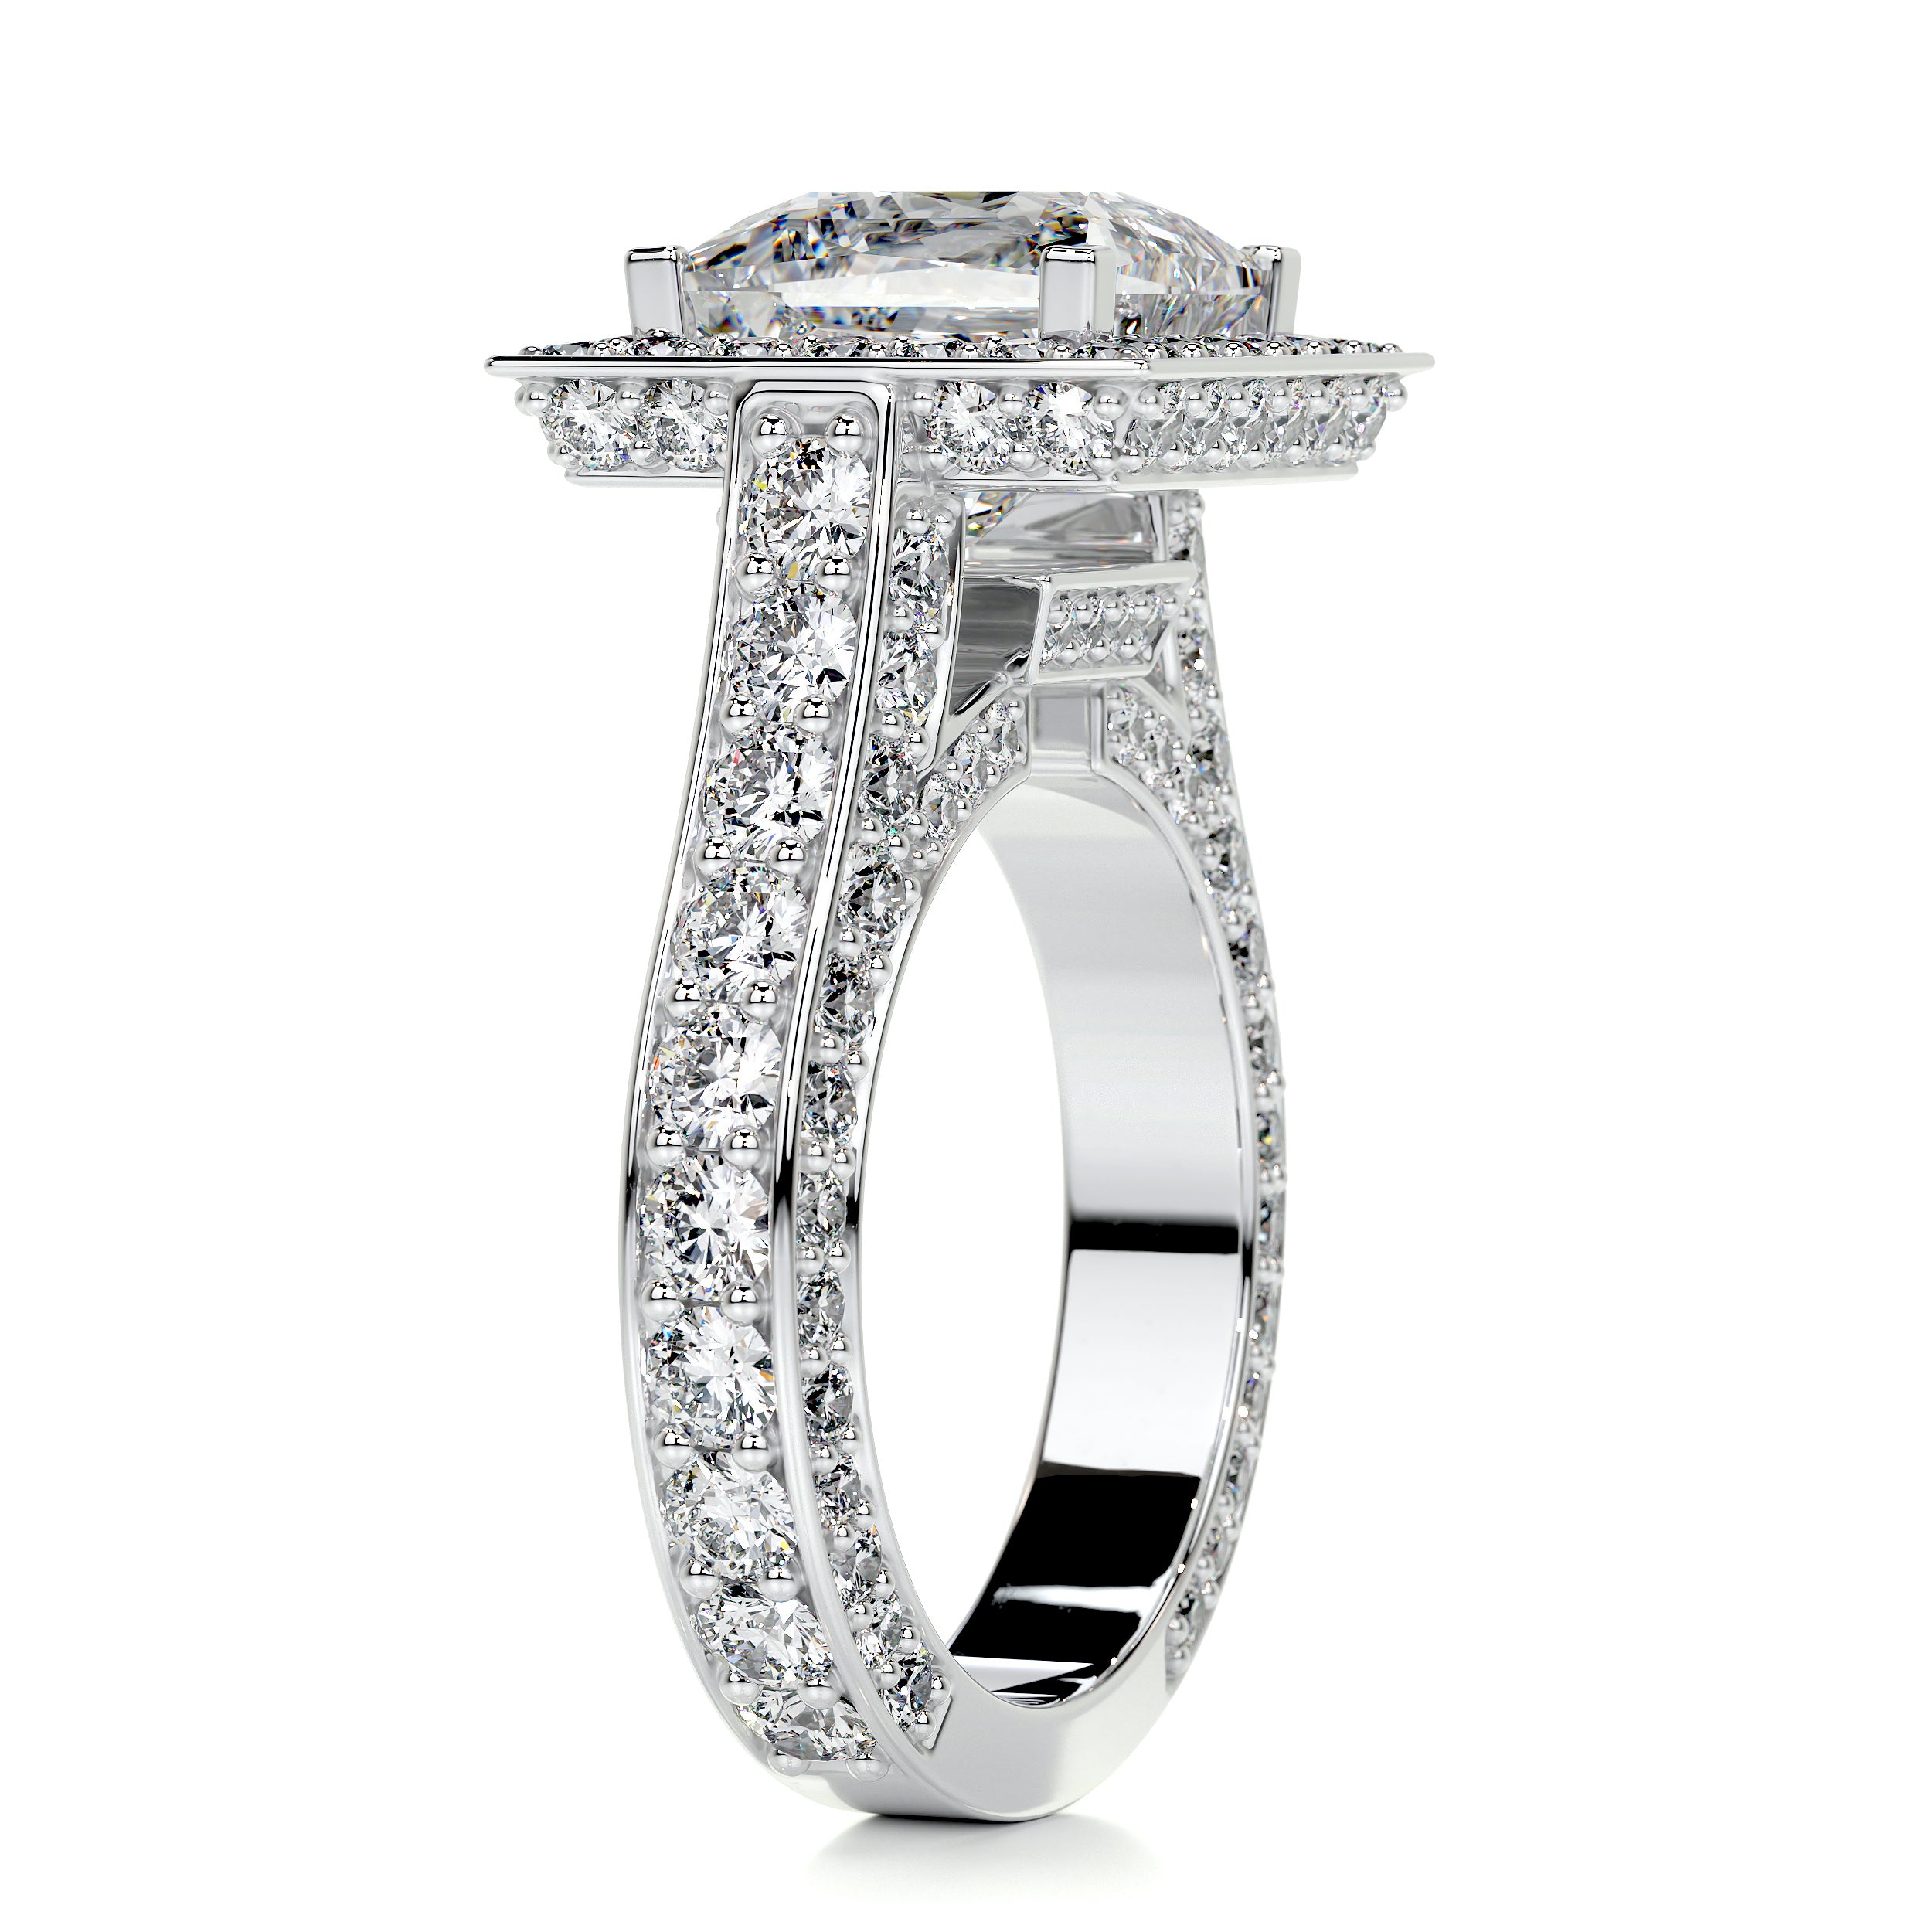 Freya Diamond Engagement Ring   (5 Carat) -14K White Gold